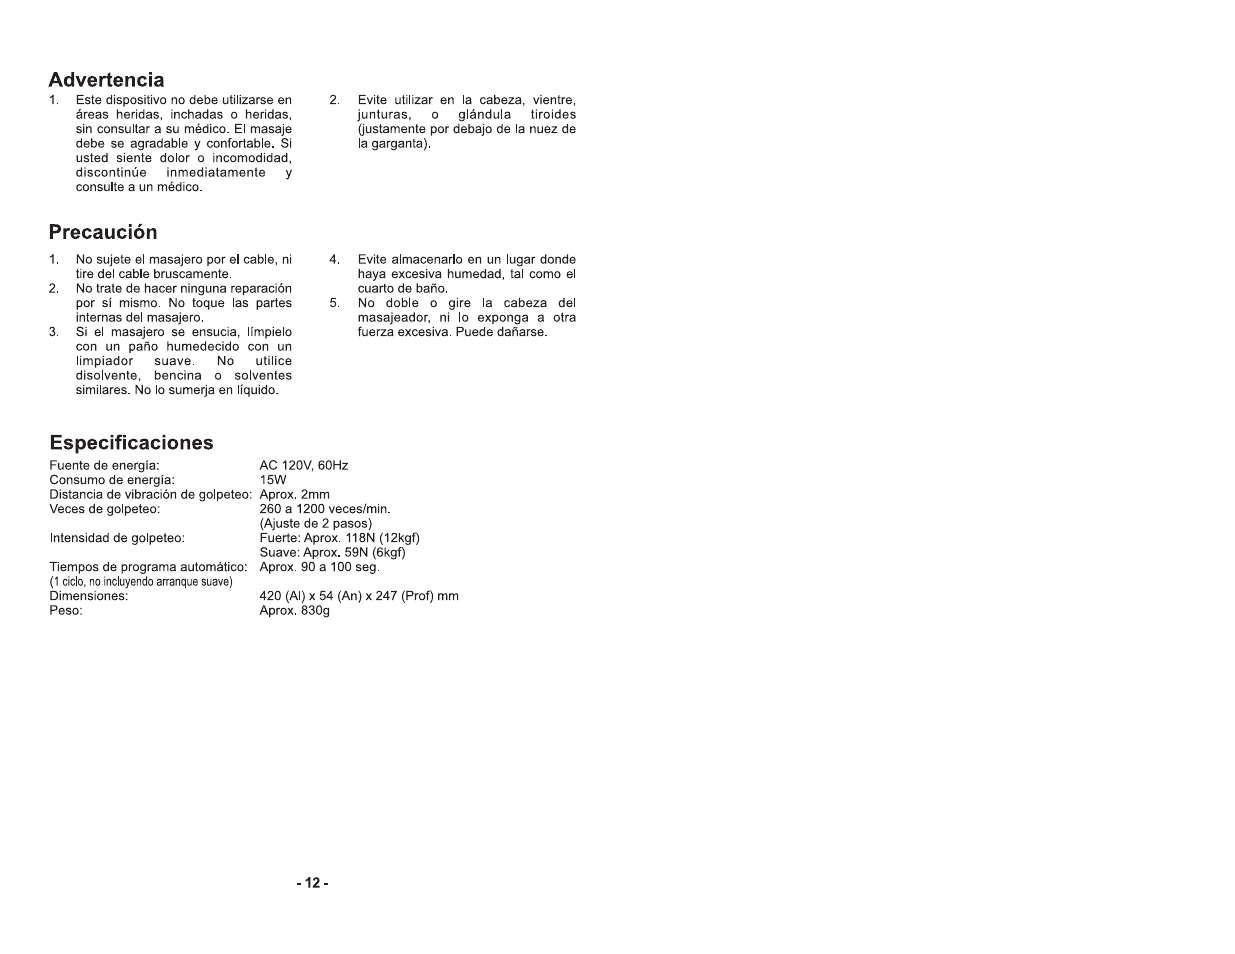 Advertencia, Precaución, Especificaciones | Panasonic EV2610K Manuel d'utilisation | Page 8 / 12